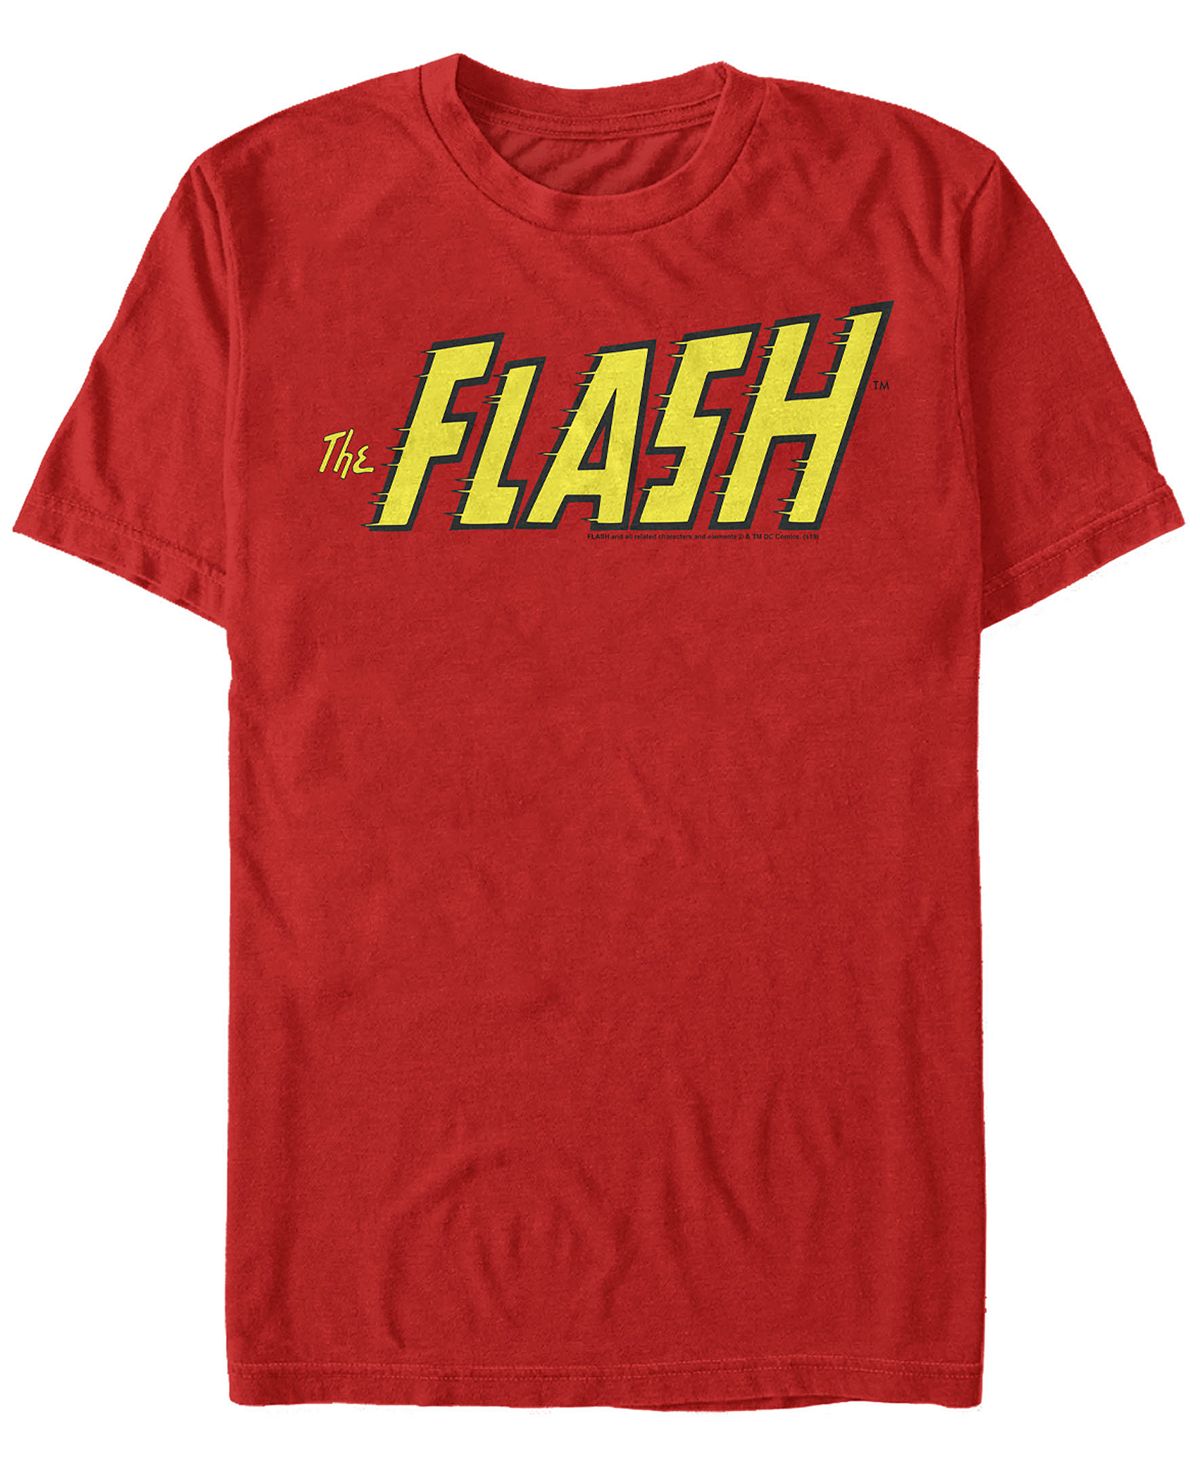 Мужская футболка с коротким рукавом с логотипом flash text Fifth Sun, красный цена и фото